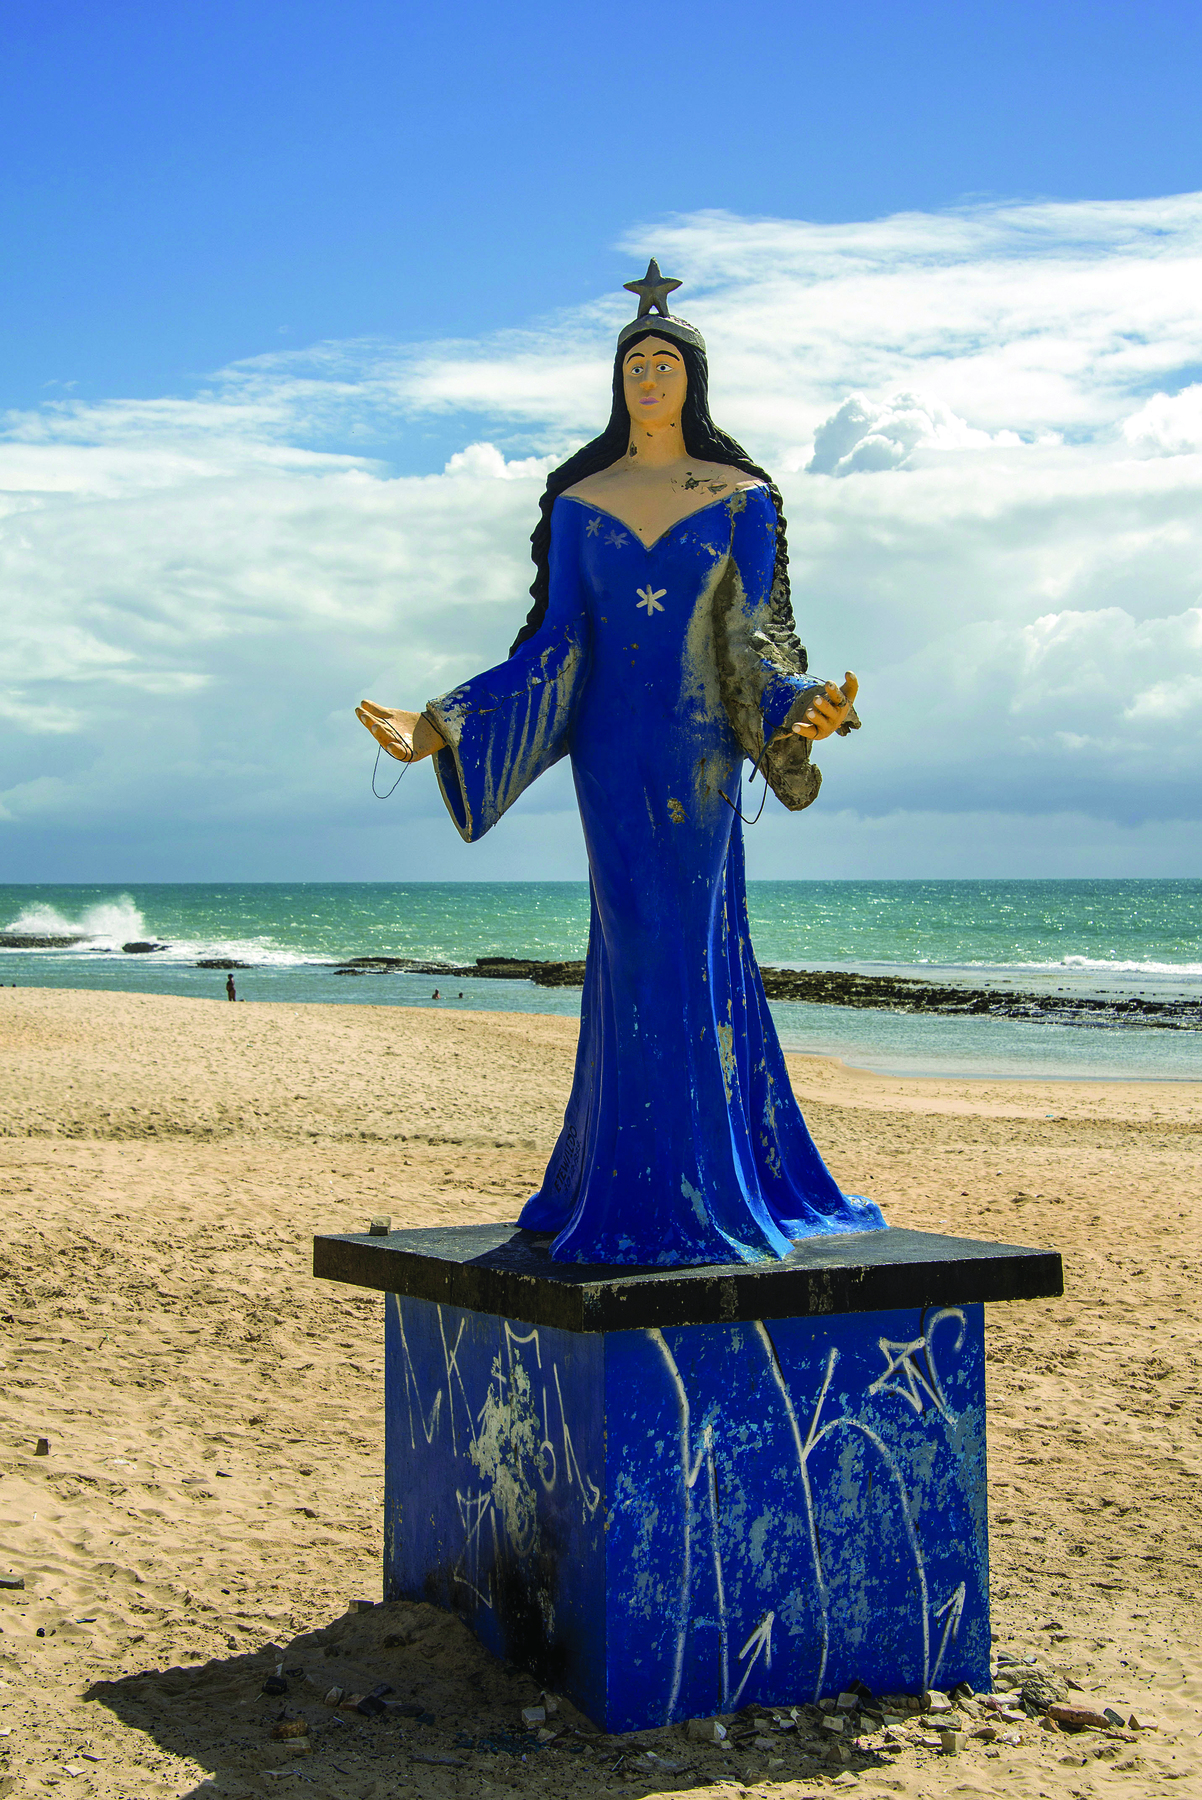 Fotografia. Estátua de figura feminina com cabelos castanhos longos, coroa e vestido azul longo. Está sobre um pedestal, em uma praia, com o mar ao fundo.